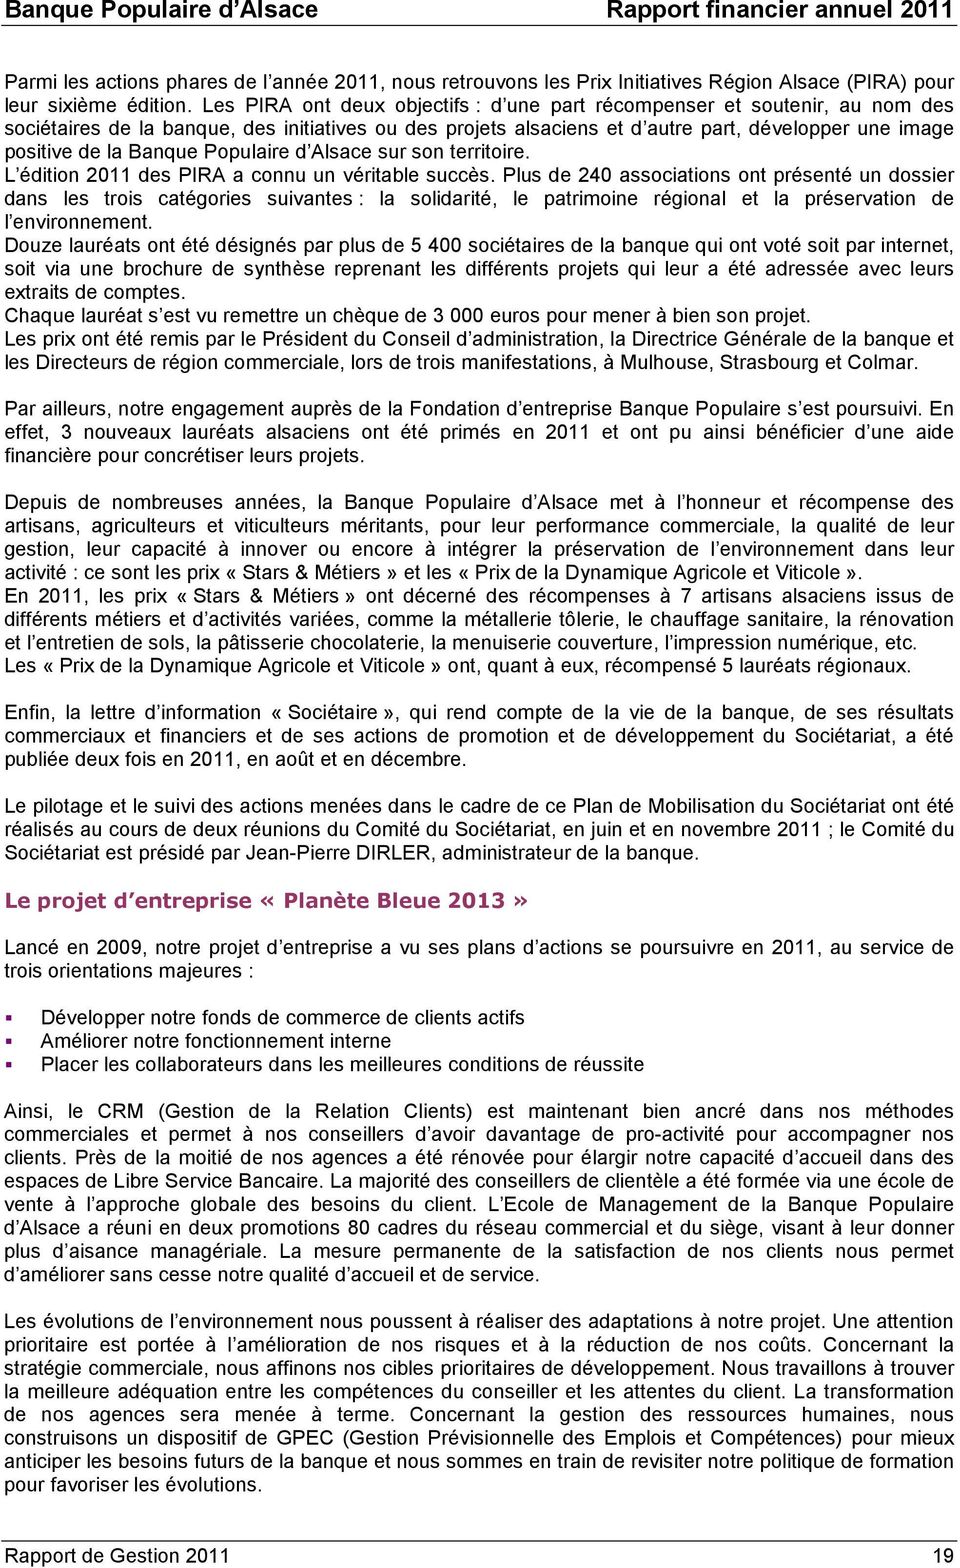 Banque Populaire d Alsace sur son territoire. L édition 2011 des PIRA a connu un véritable succès.